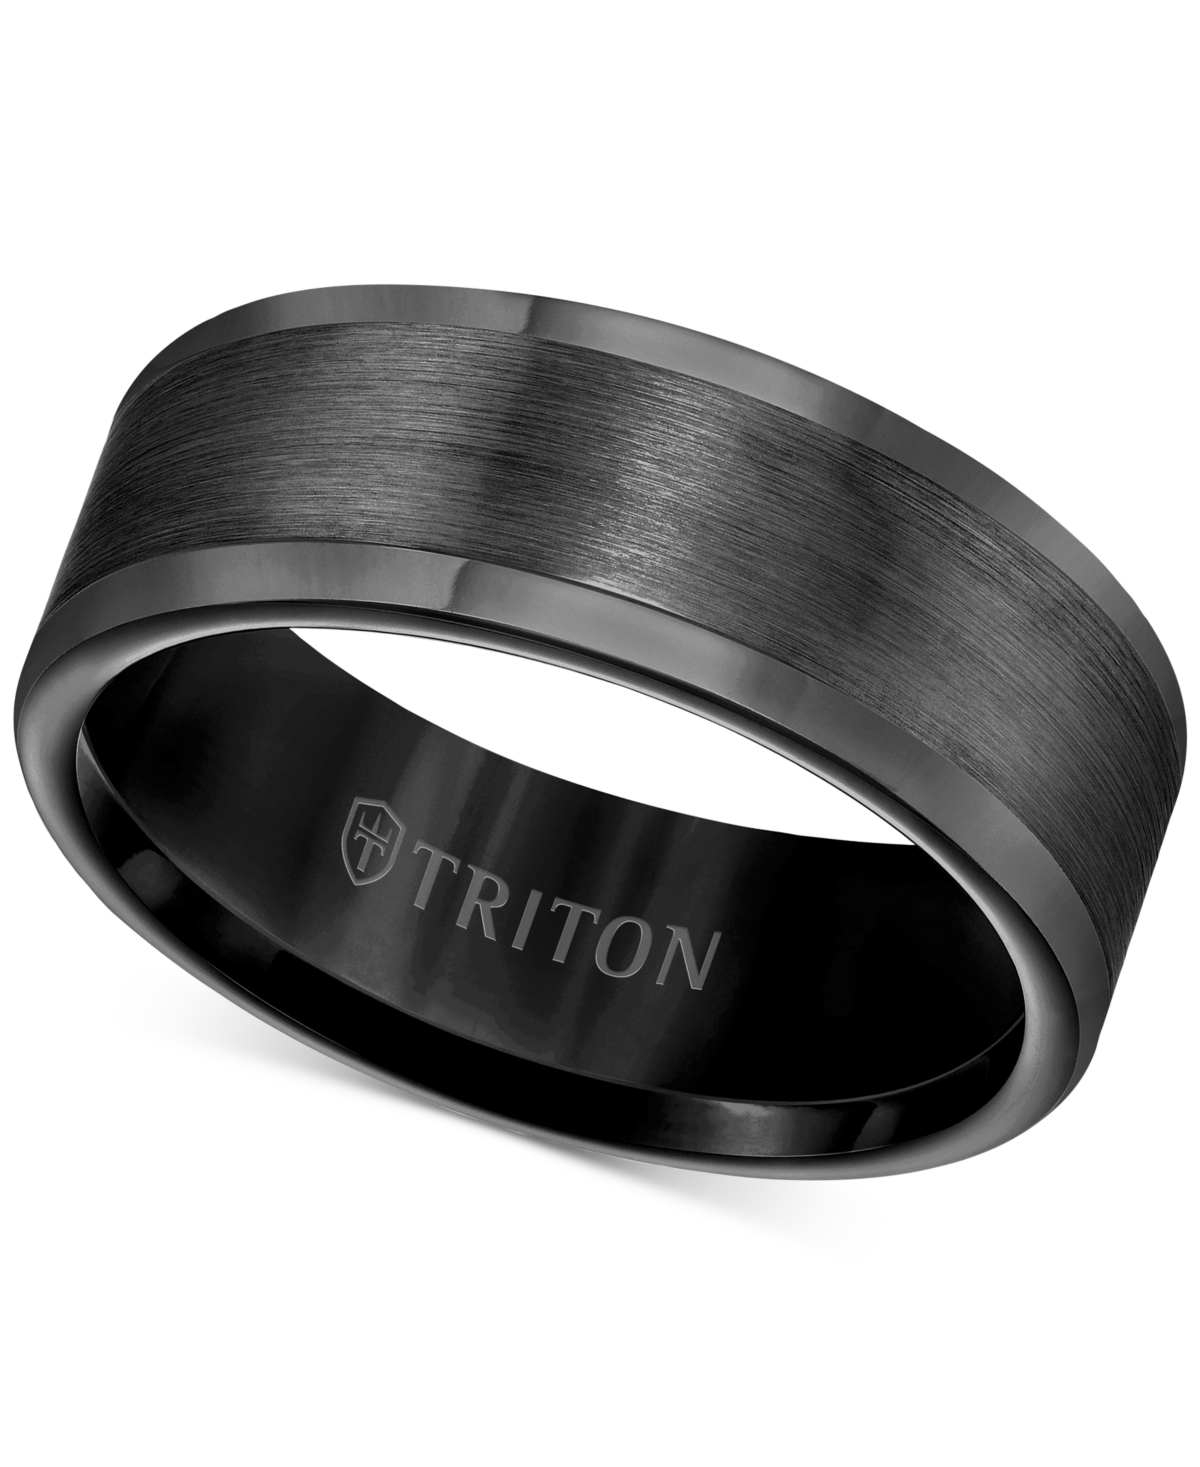 Men's Ring, 8mm Wedding Band in White or Black Tungsten - White Tungsten